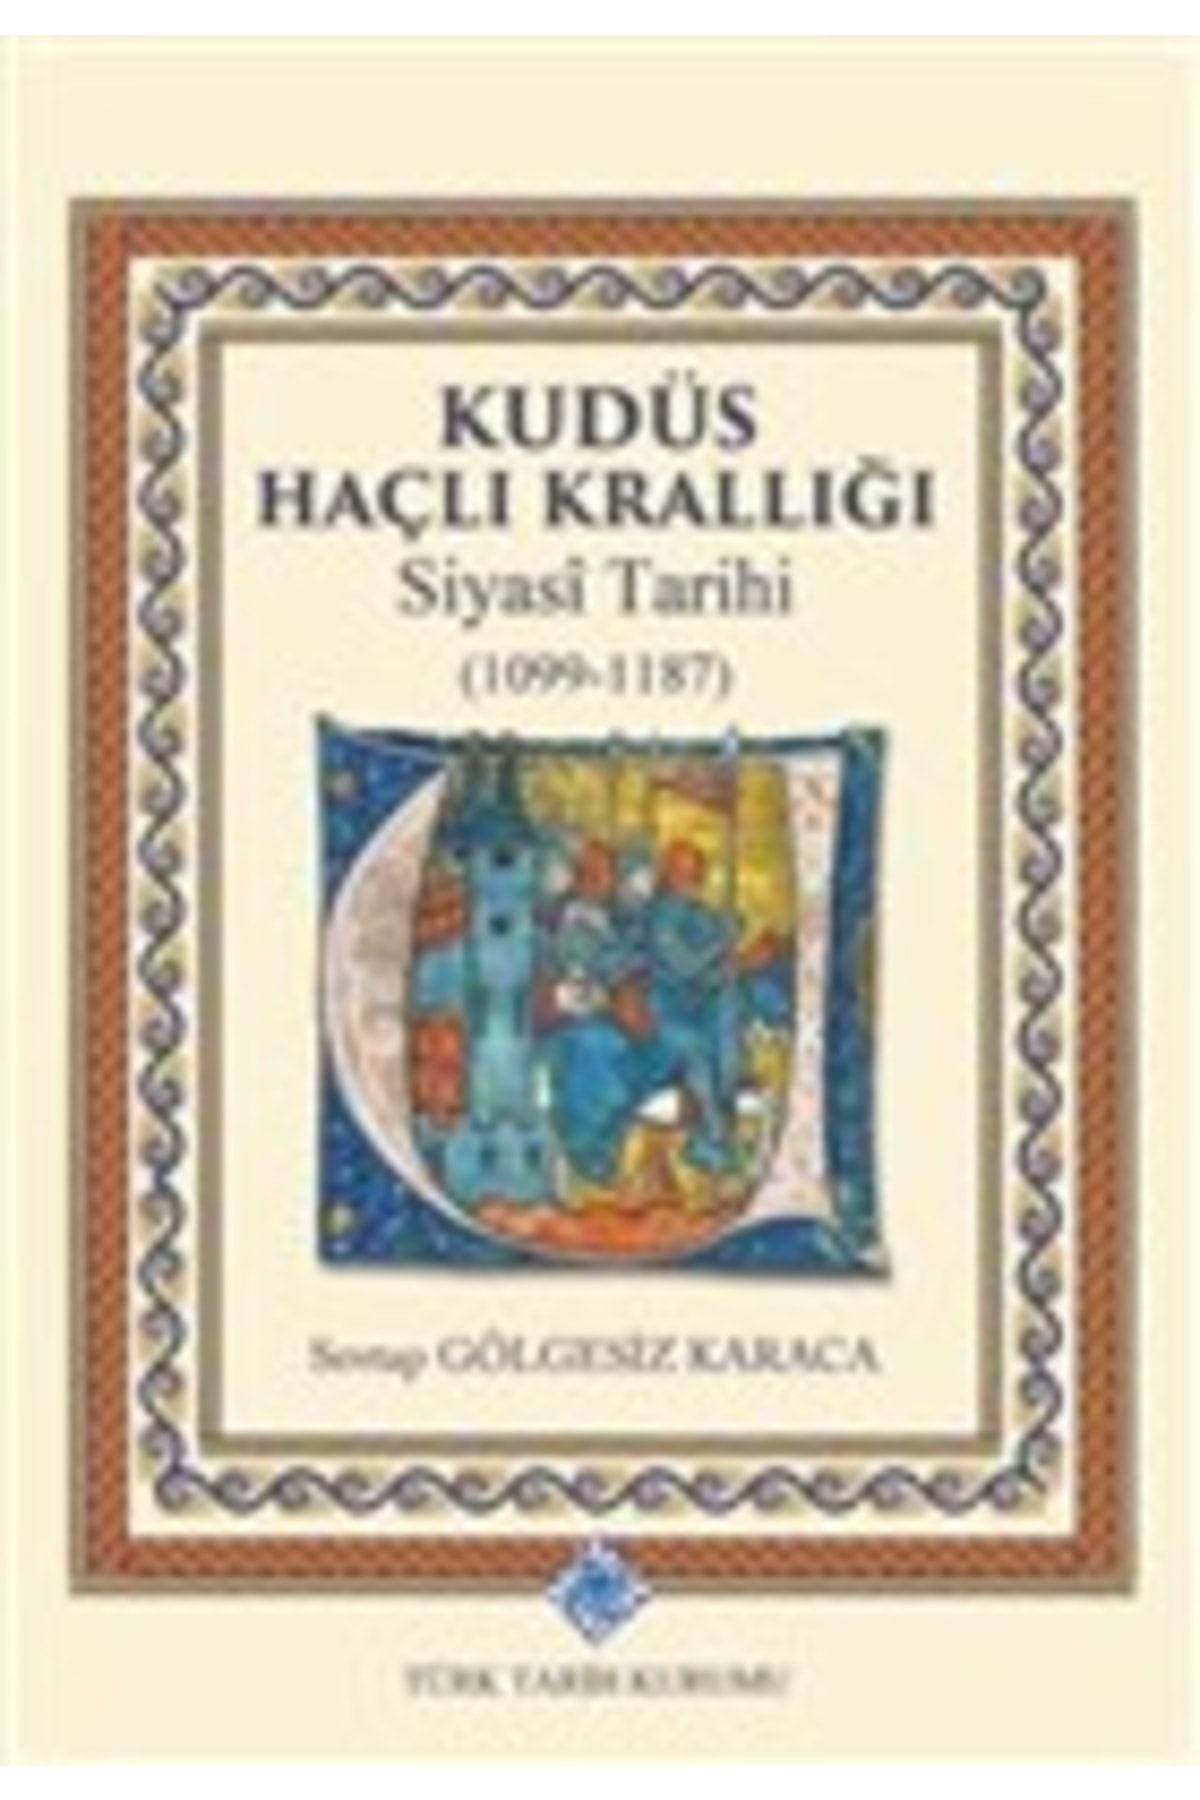 Türk Tarih Kurumu Yayınları Kudüs Haçlı Krallığı Siyasi Tarihi (1099-1187)